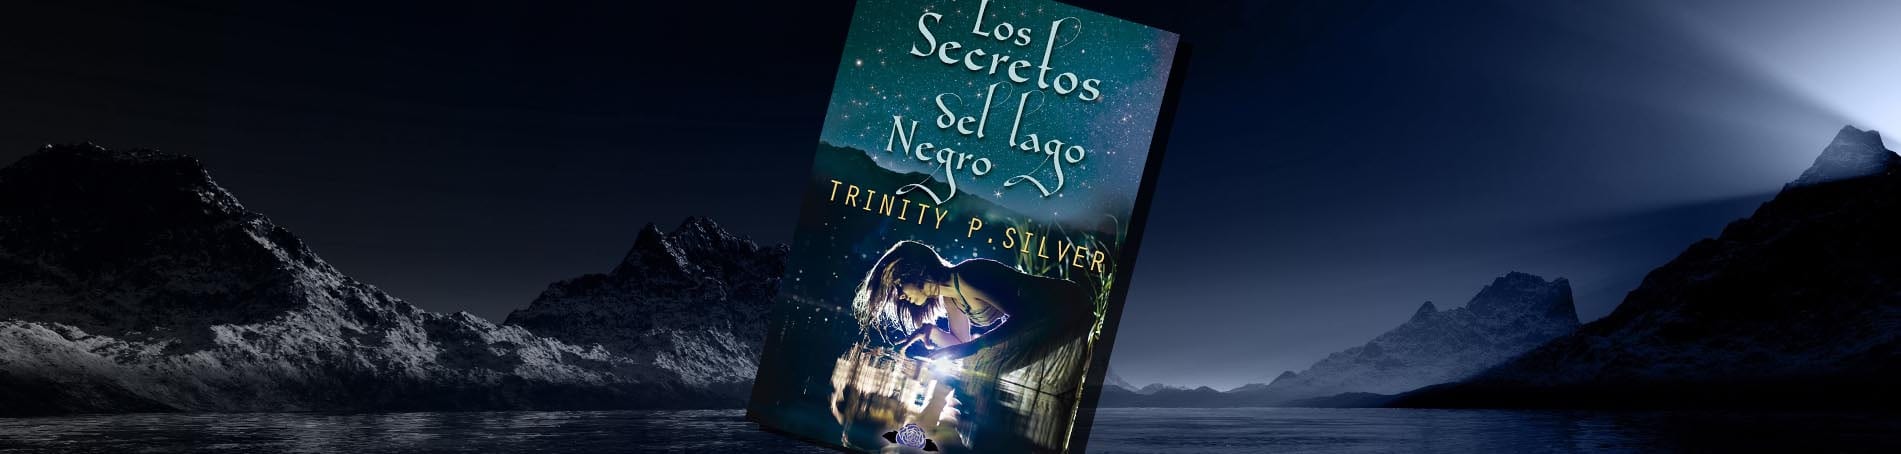 Trinity P. Silver nos cuenta como nació Los secretos del Lago Negro